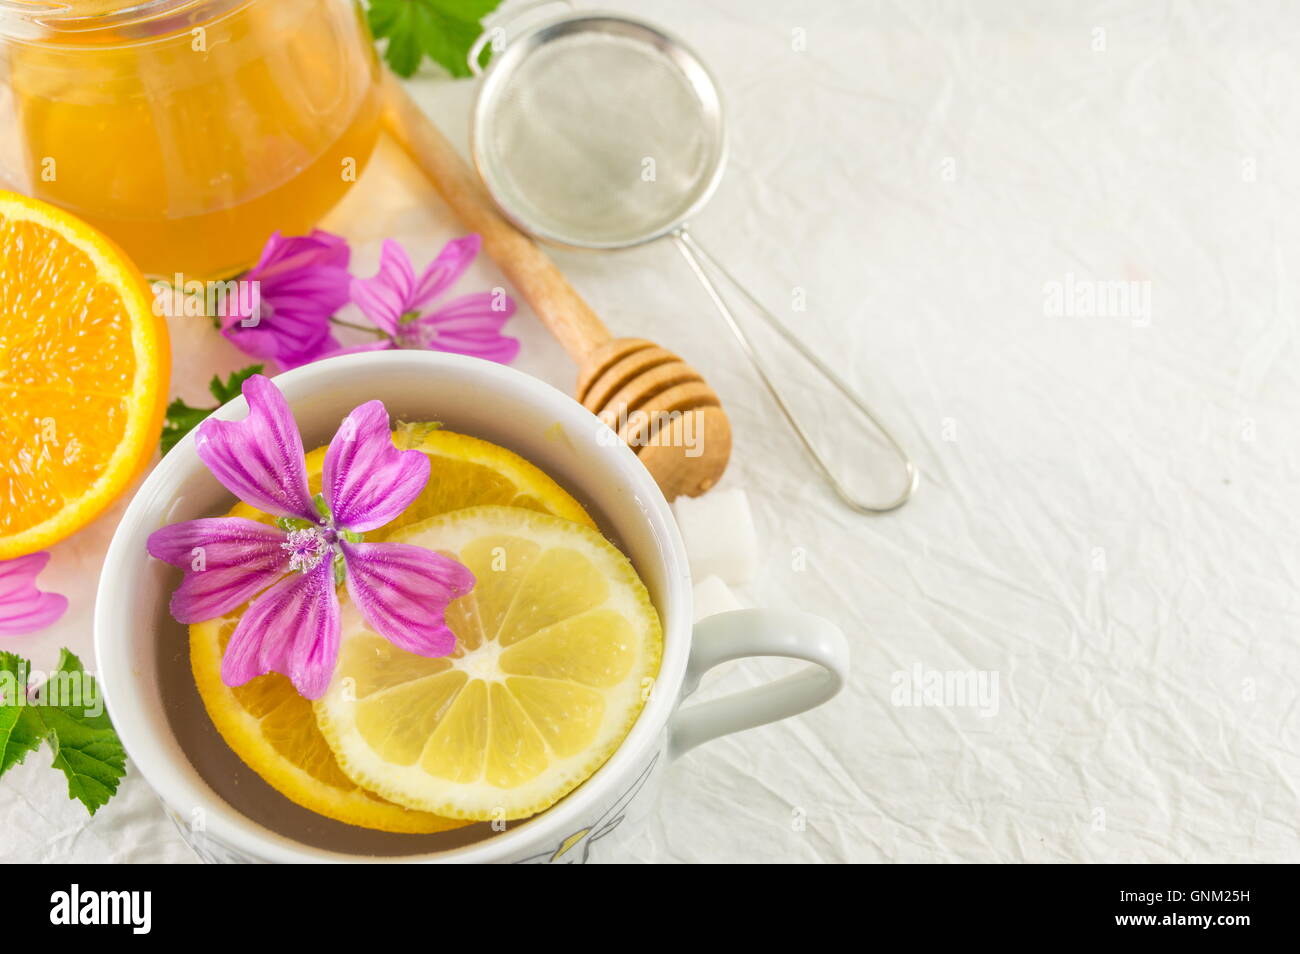 Malva sylvestris, mauve, de thé au citron et fleurs fraîches Banque D'Images